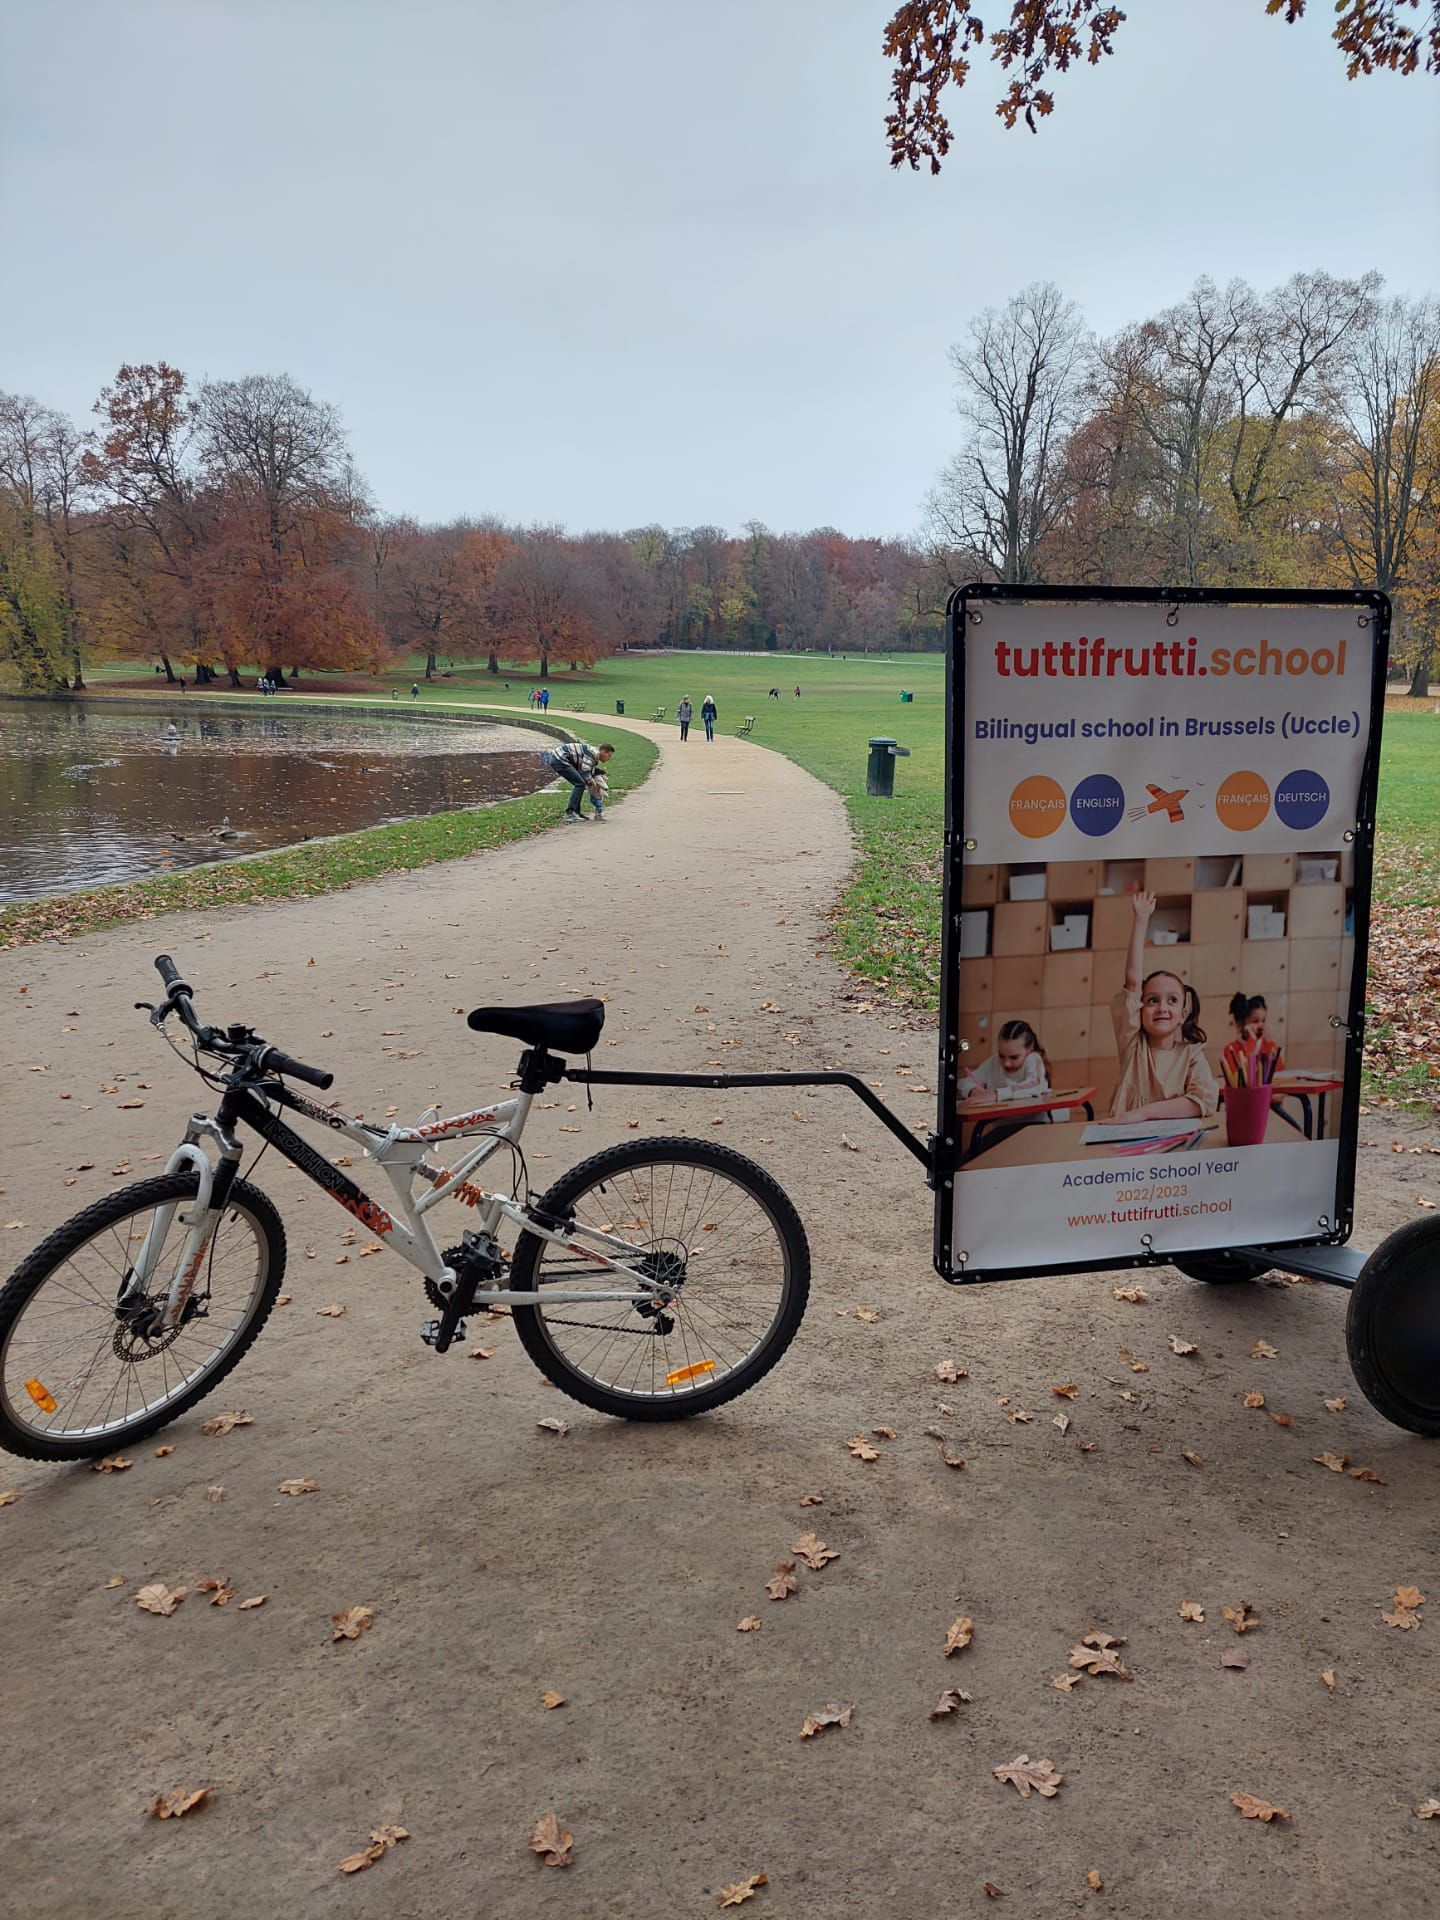 Vélo publicitaire en Belgique - street marketing